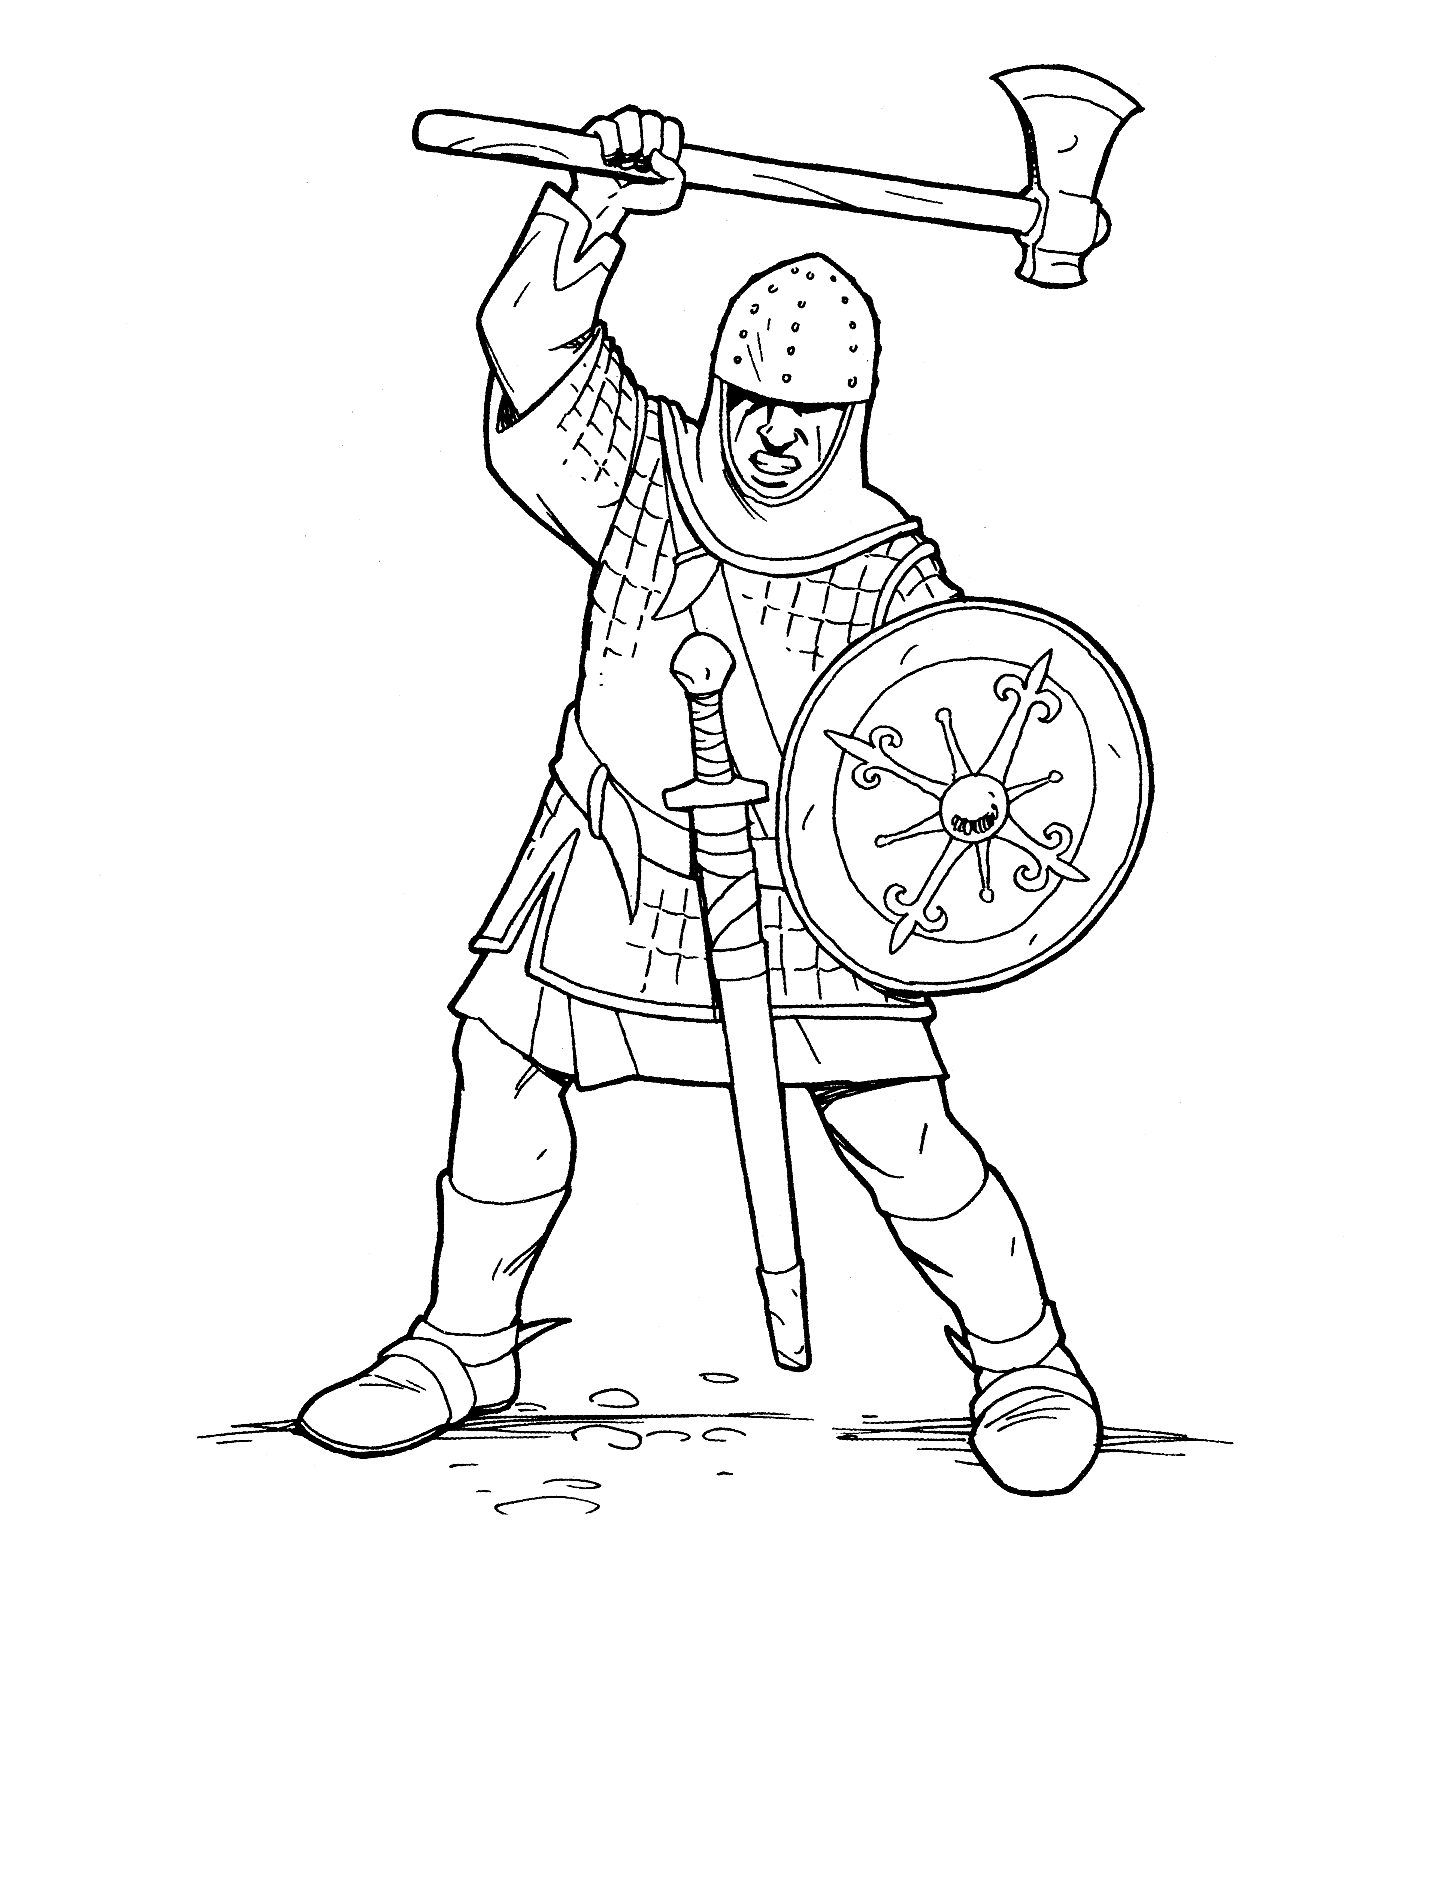 Coloring page - Knight Crusader